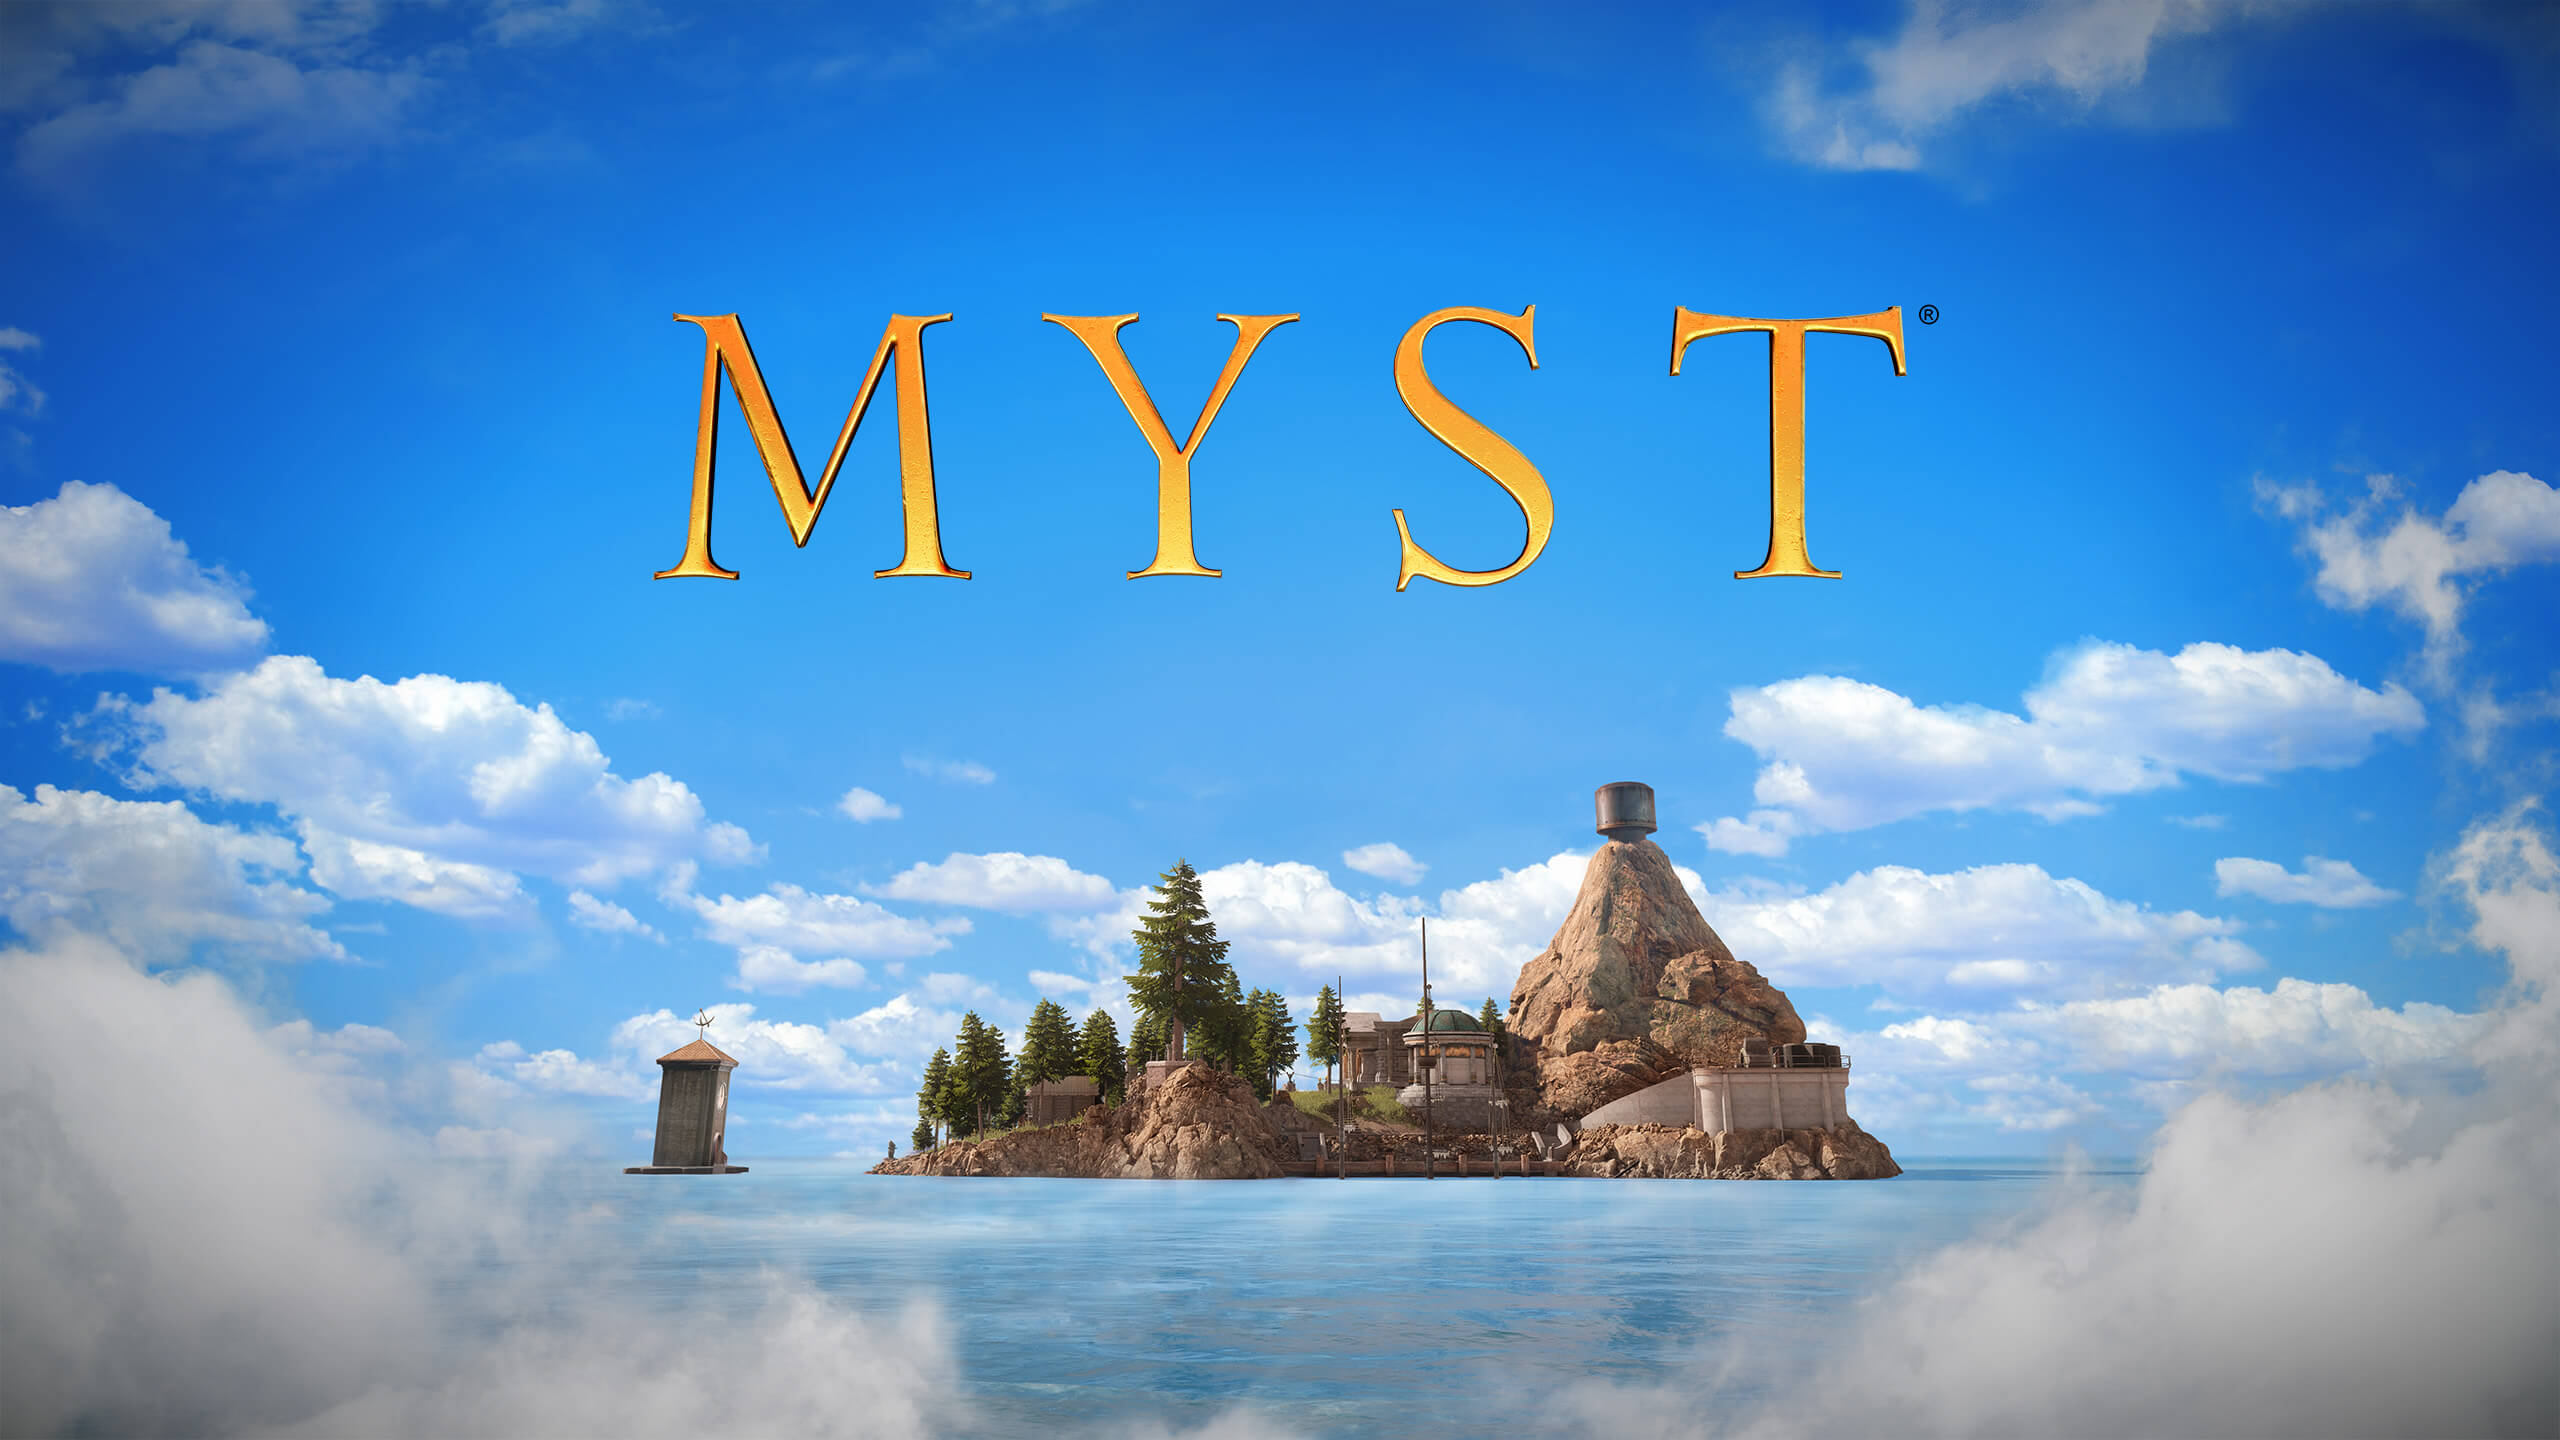 myst free download mac